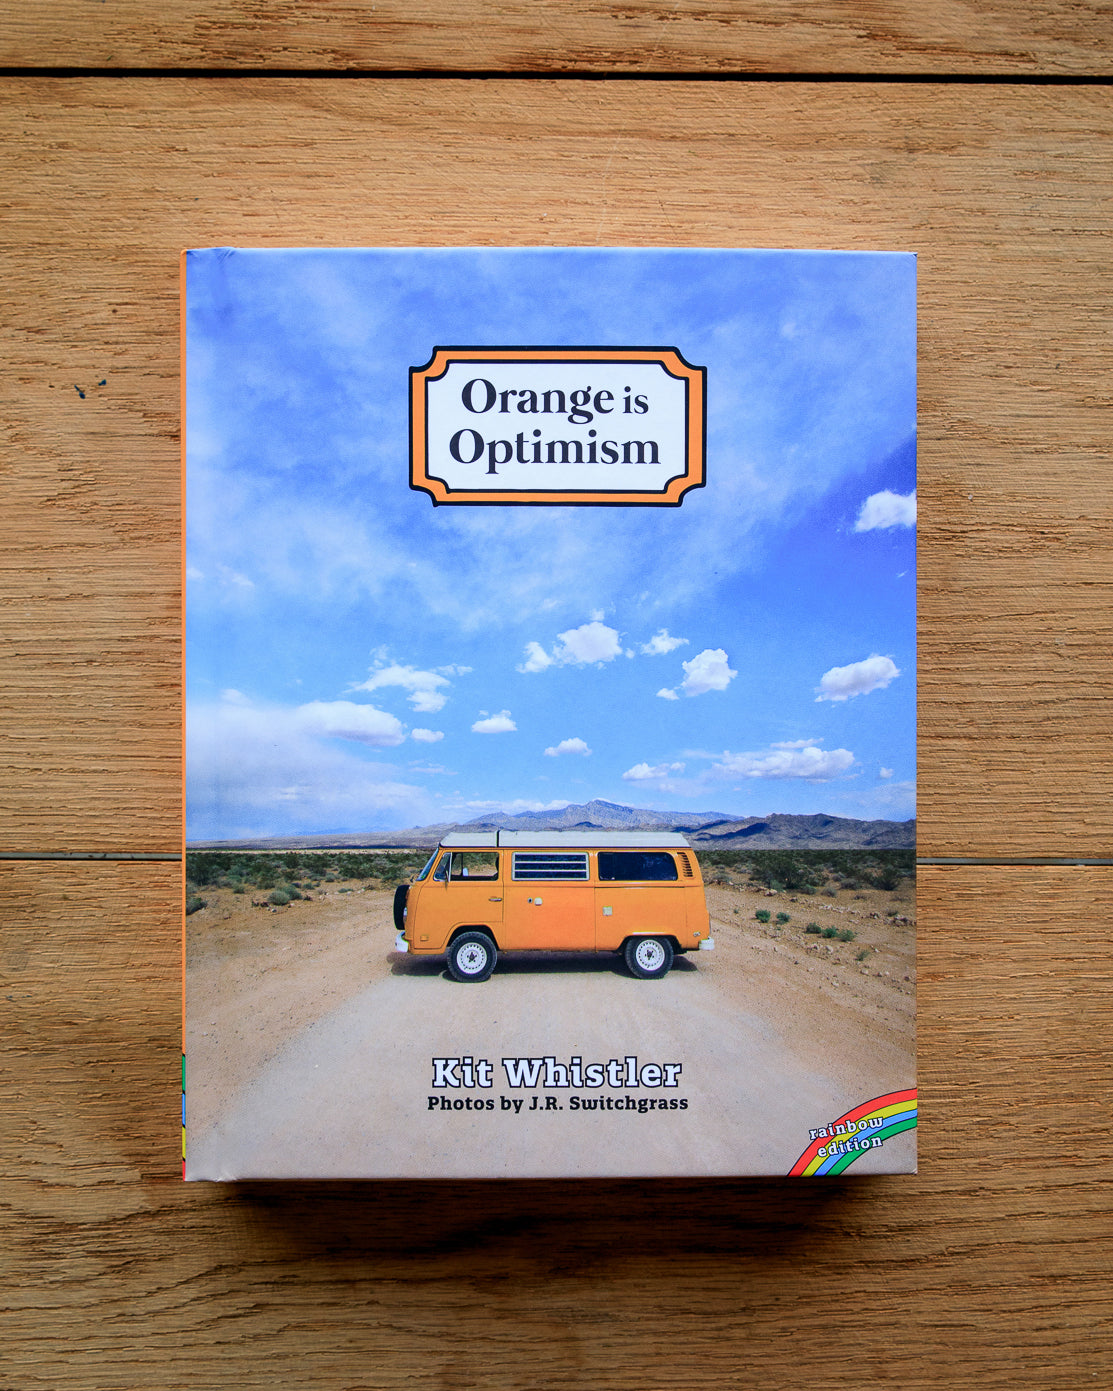 Rainbow Edition of "Orange Is Optimism"